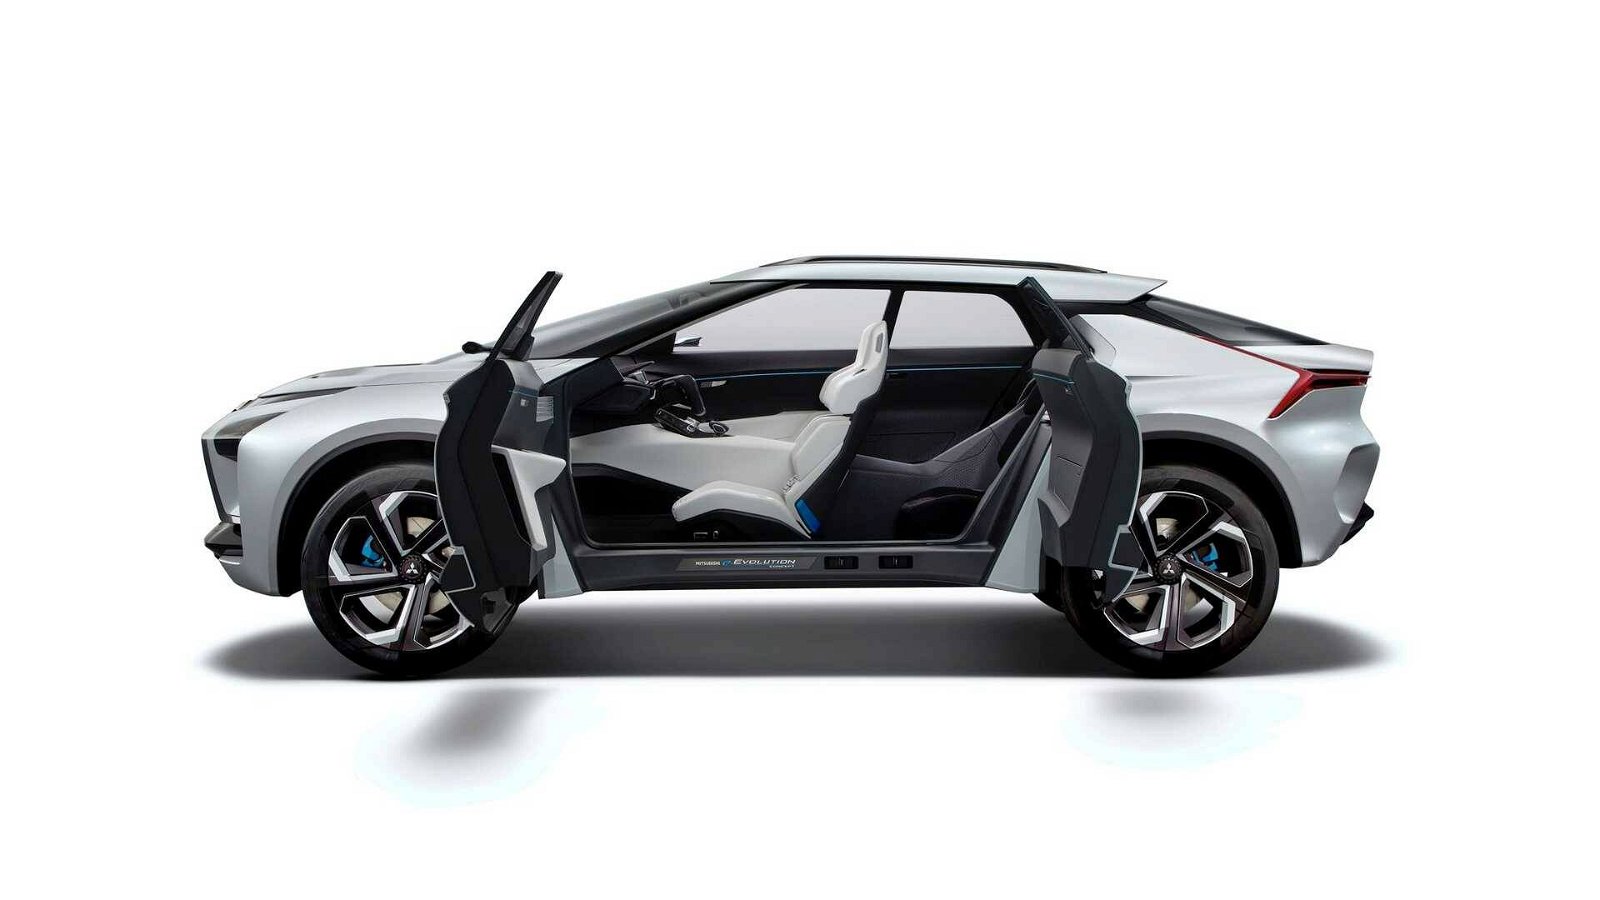 Immagine di Mitsubishi entra nel mondo EV con un crossover da 500km di autonomia